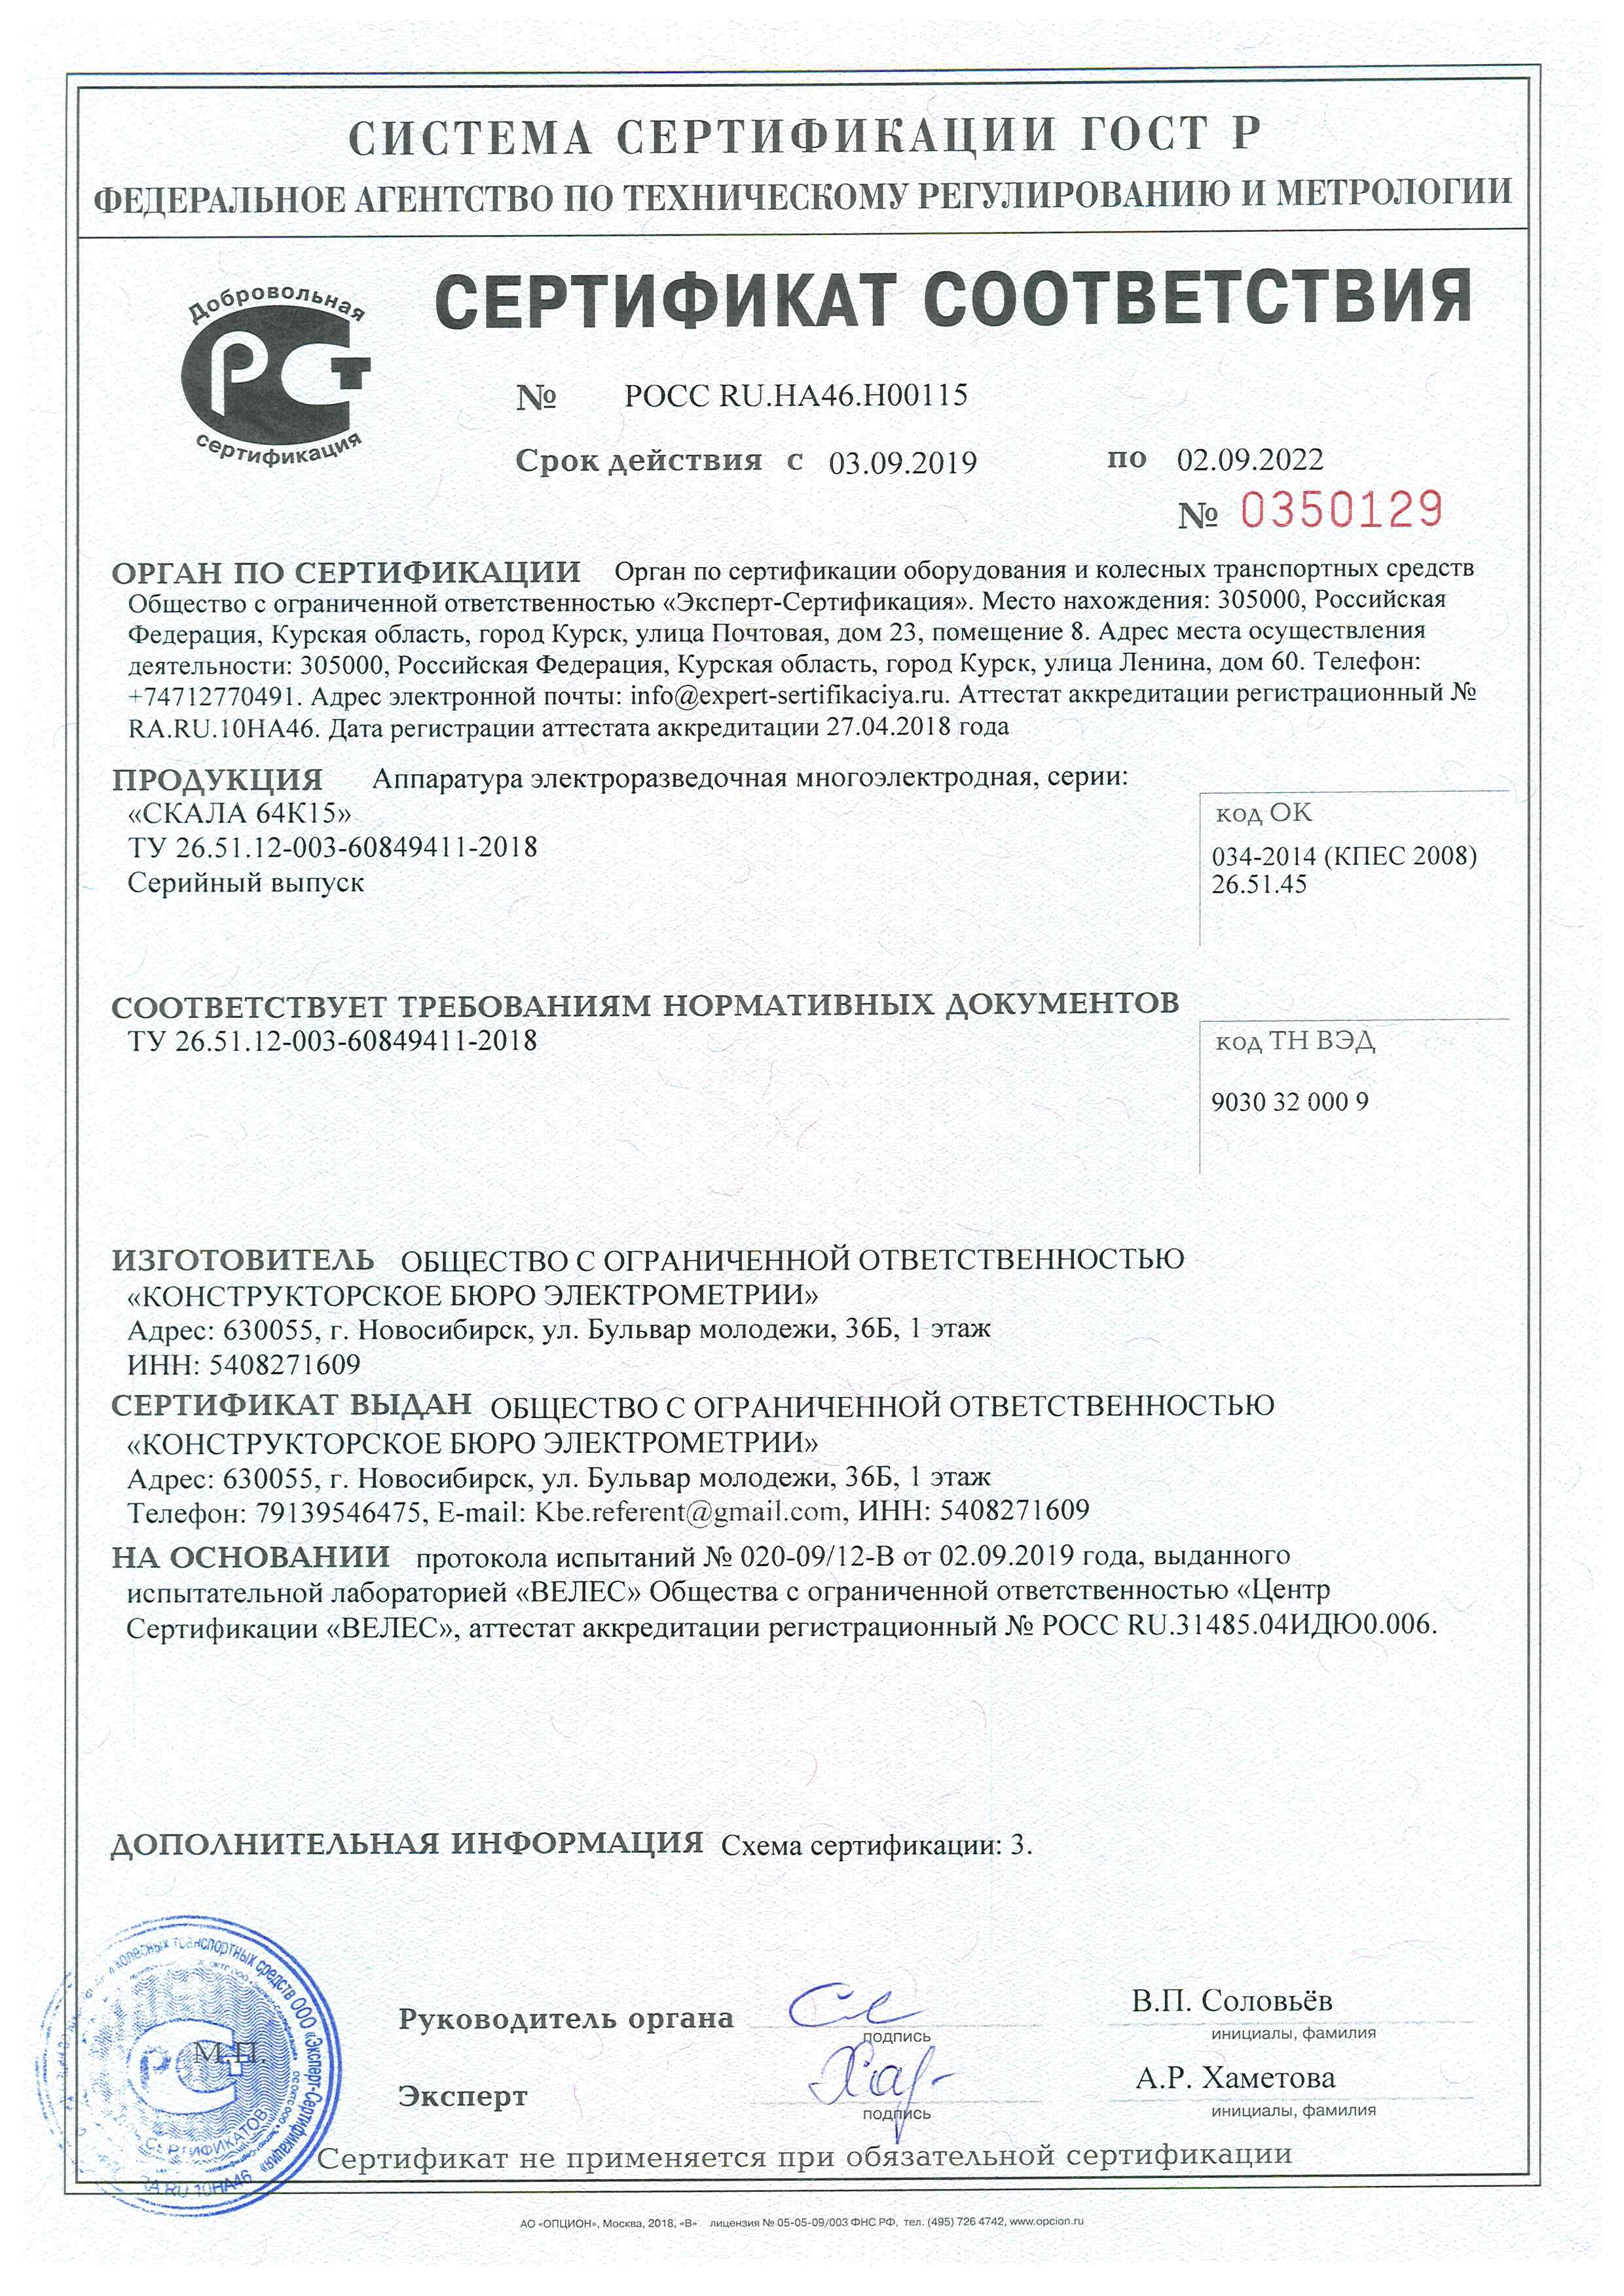 Сертификат Скала64К15